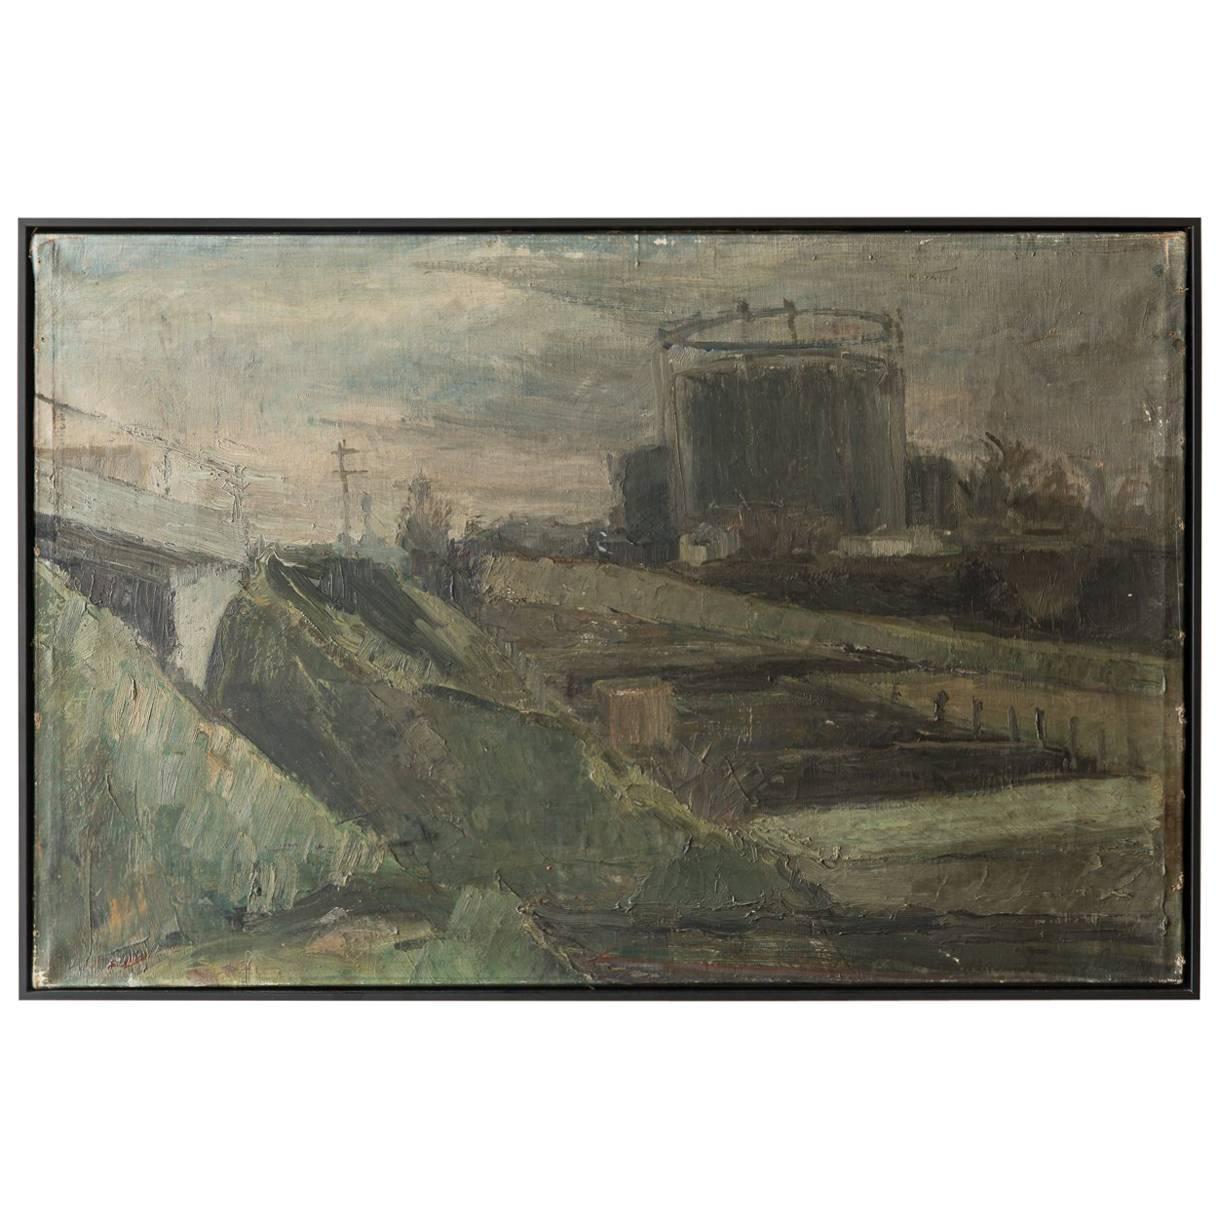 Black Framed "Gaswork" Vintage Industrial Landscape Painting Signed Flemming